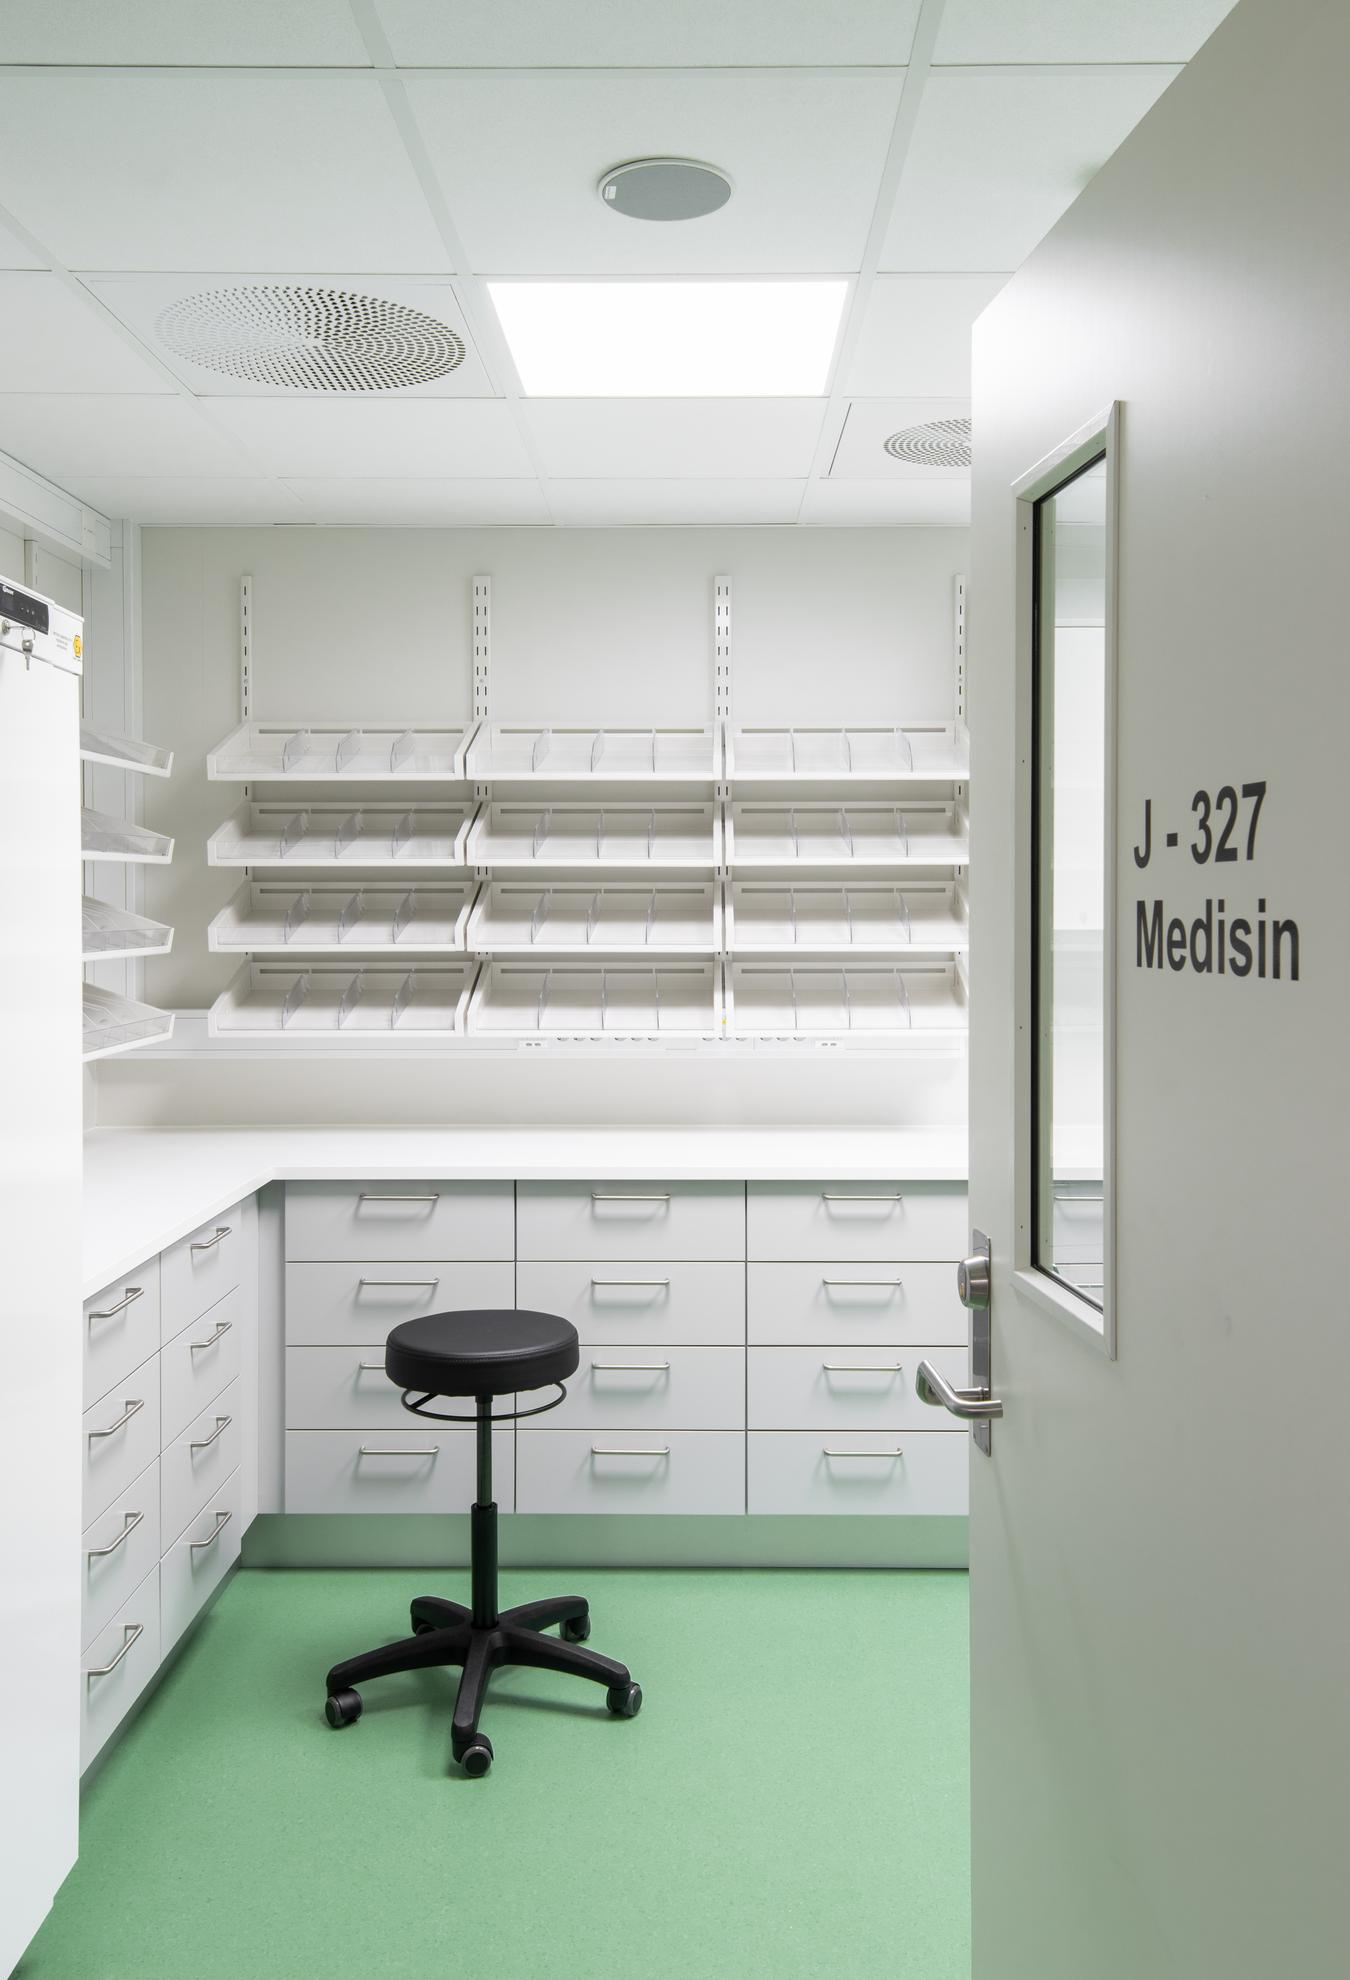 Medicinrum med grönt golv. Foto